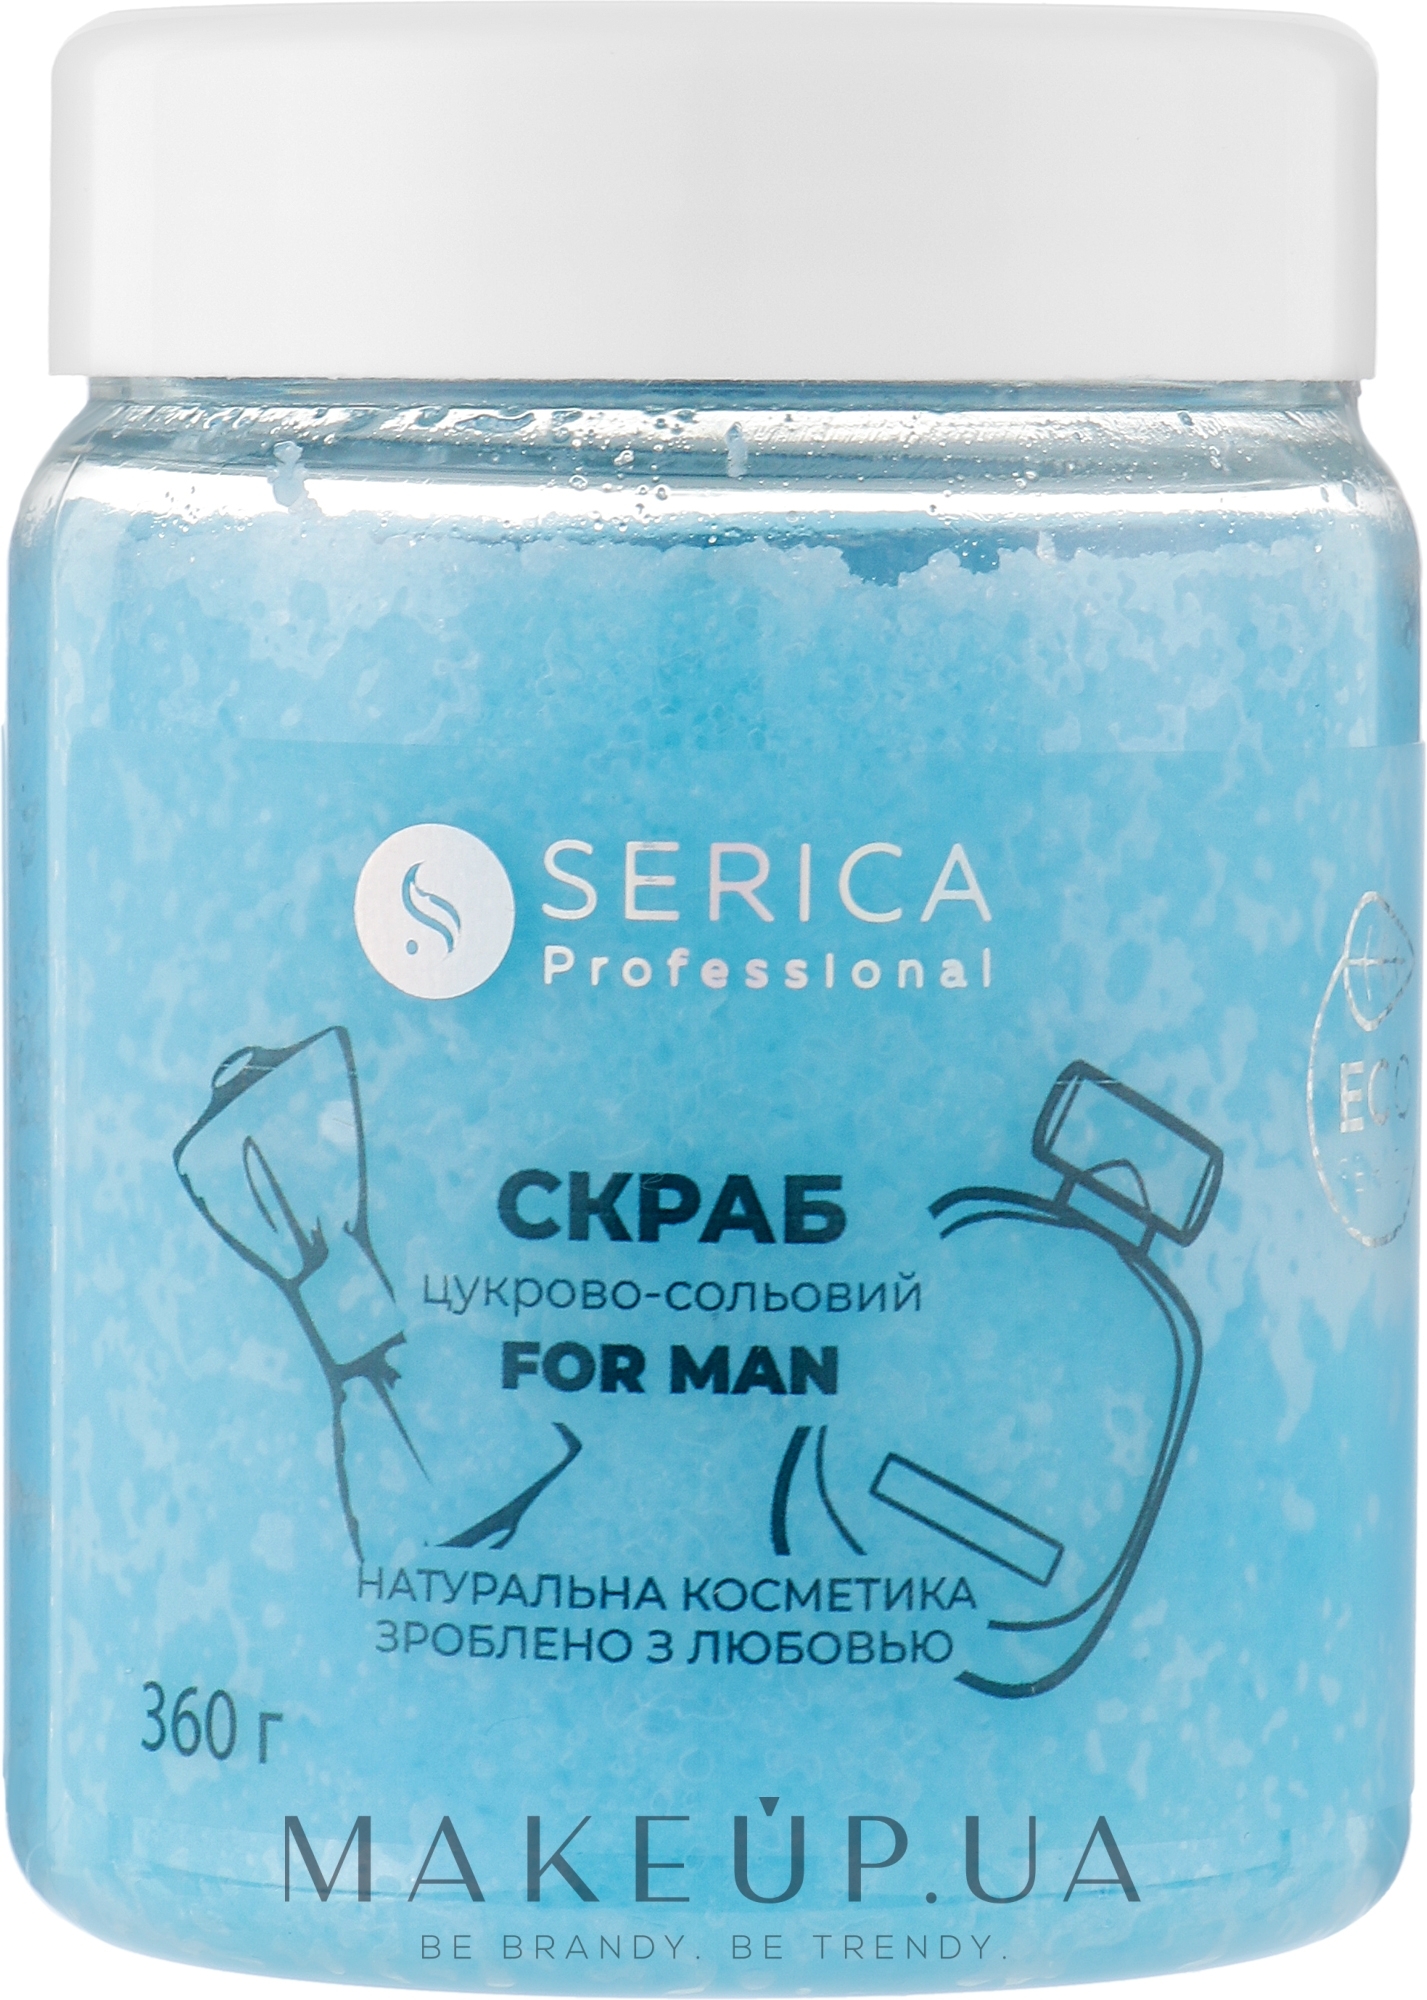 Скраб цукрово-сольовий для чоловіків - Serica For Man — фото 360g